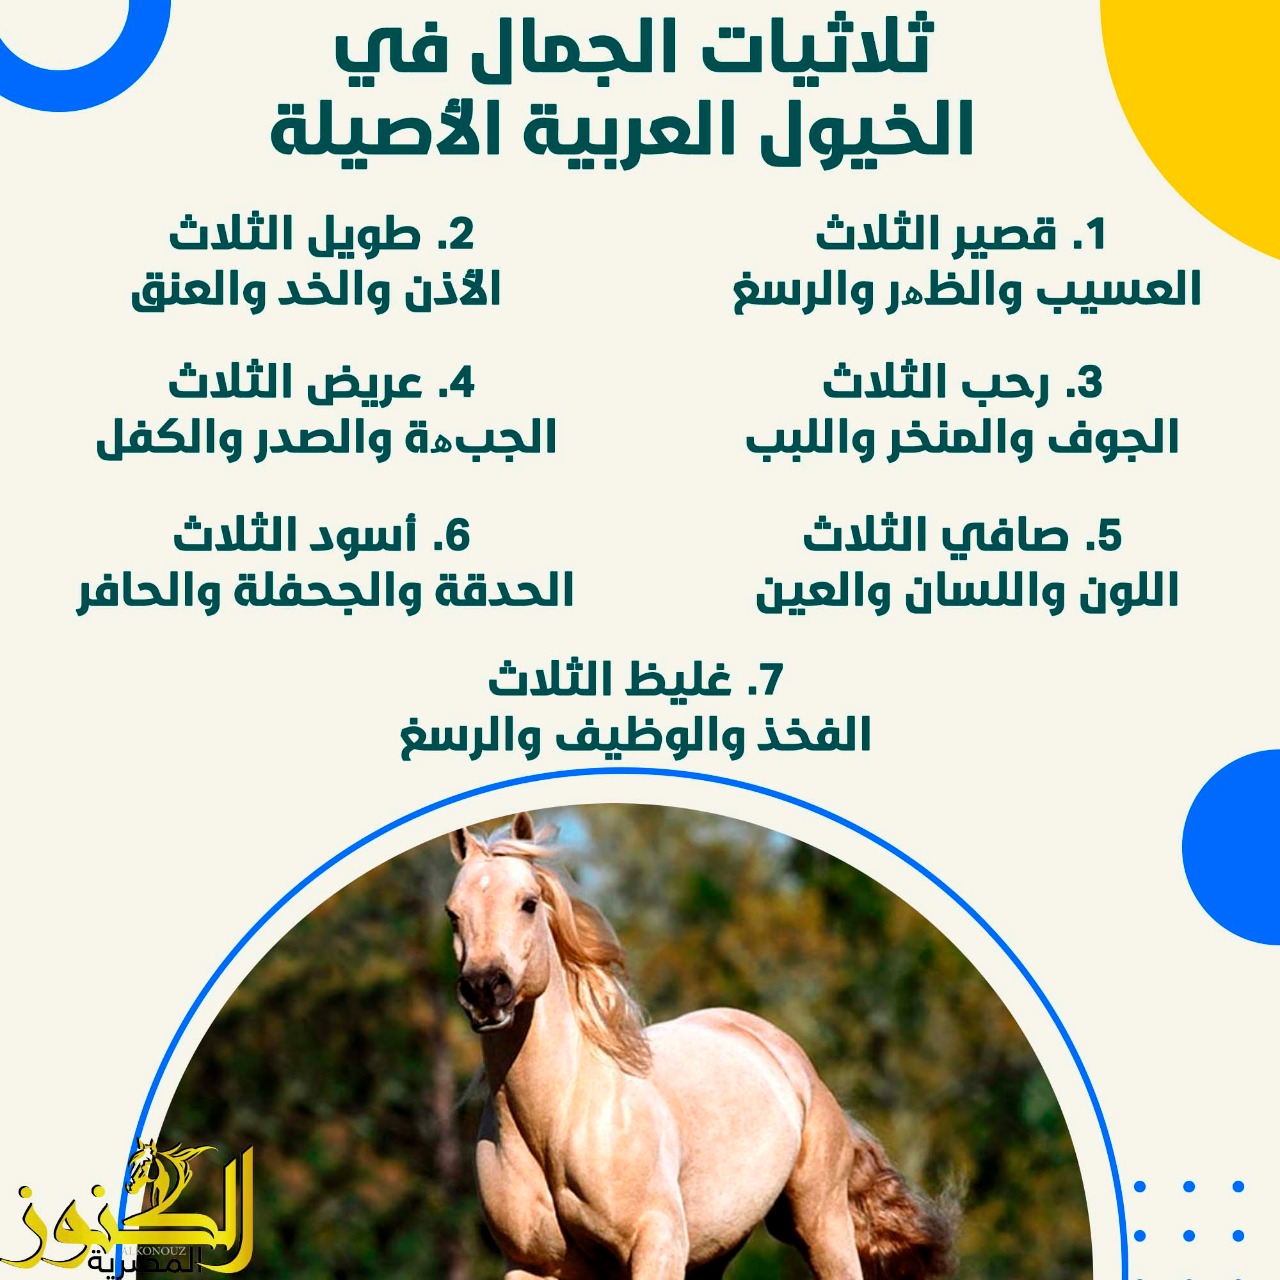 ثلاثيات الجمال في الخيول العربية الأصيلة.. الأفضل والأكرم والأشرف